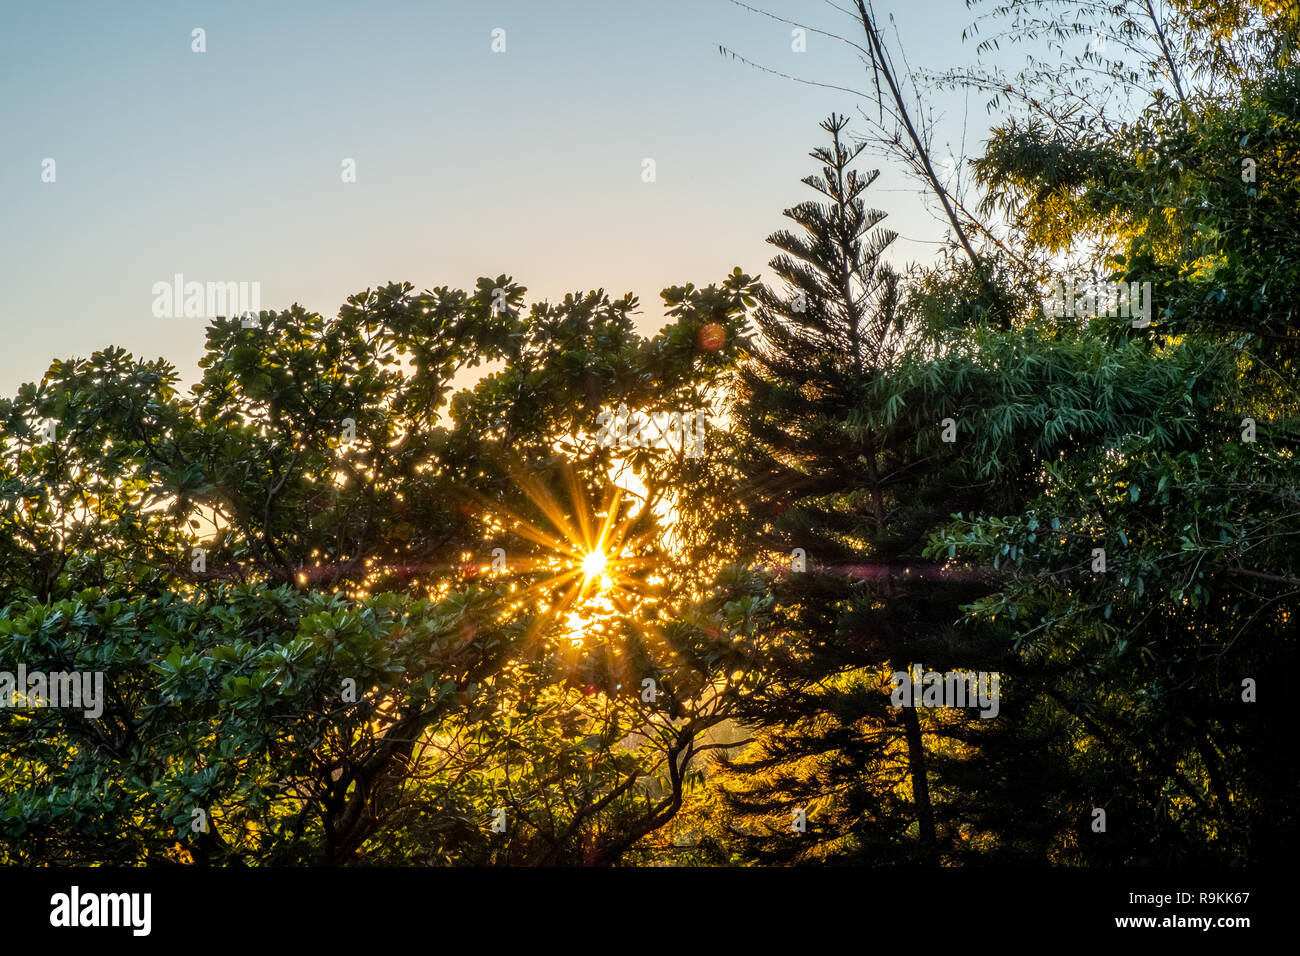 Die Sonne scheint durch die Baumkronen Verbreitung sein Licht an einem schönen Frühlingsmorgen. Blick aus dem Fenster in der Stadt Insel Florianópolis, Brasilien. Stockfoto